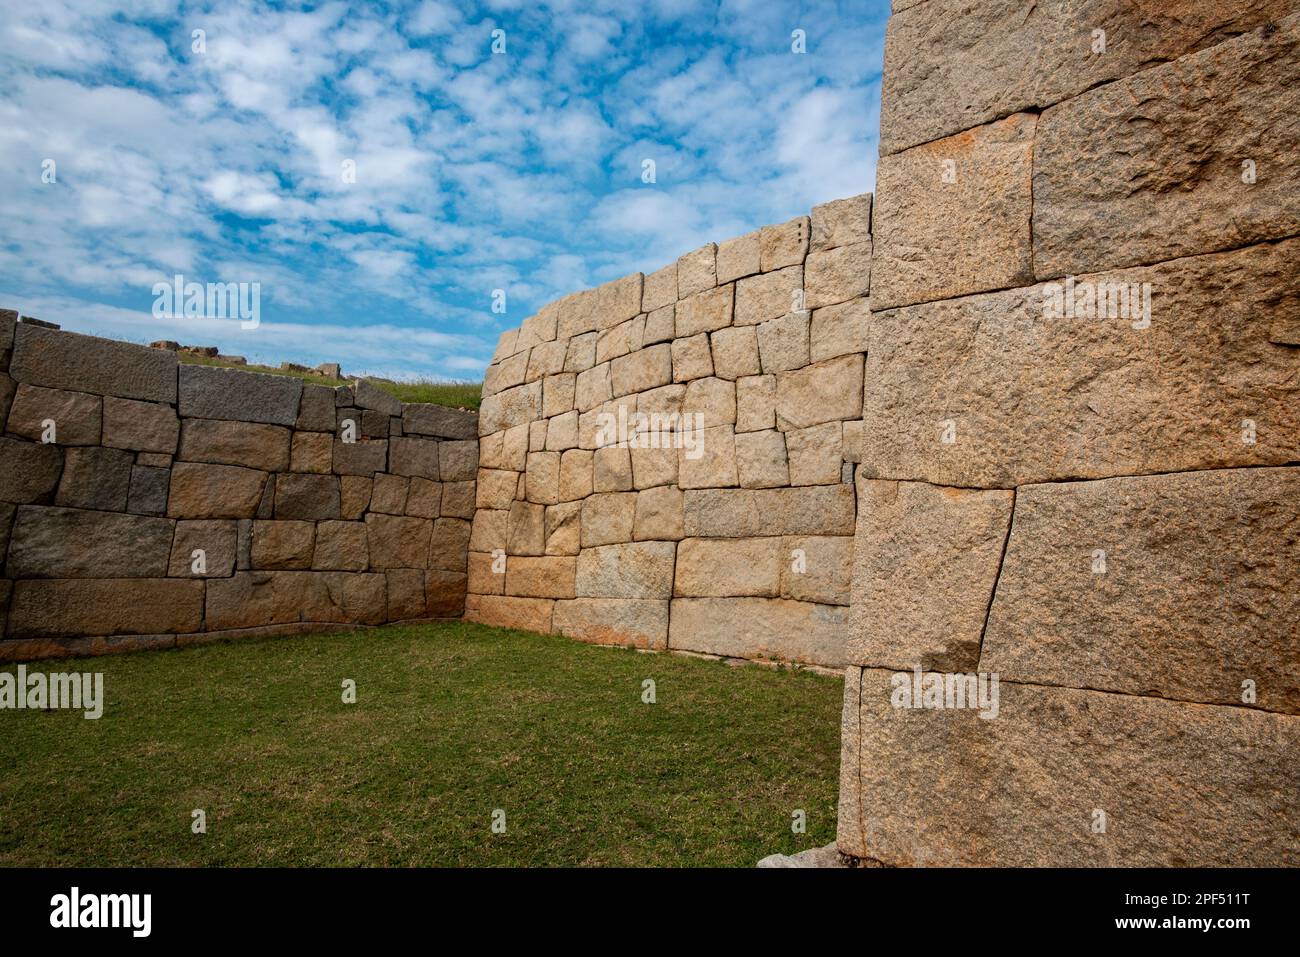 Massive Steinmauern bilden die Festung von Hampi, der Hauptstadt des Vijayanagara-Reiches. Hampi ist ein UNESCO-Weltkulturerbe. Stockfoto